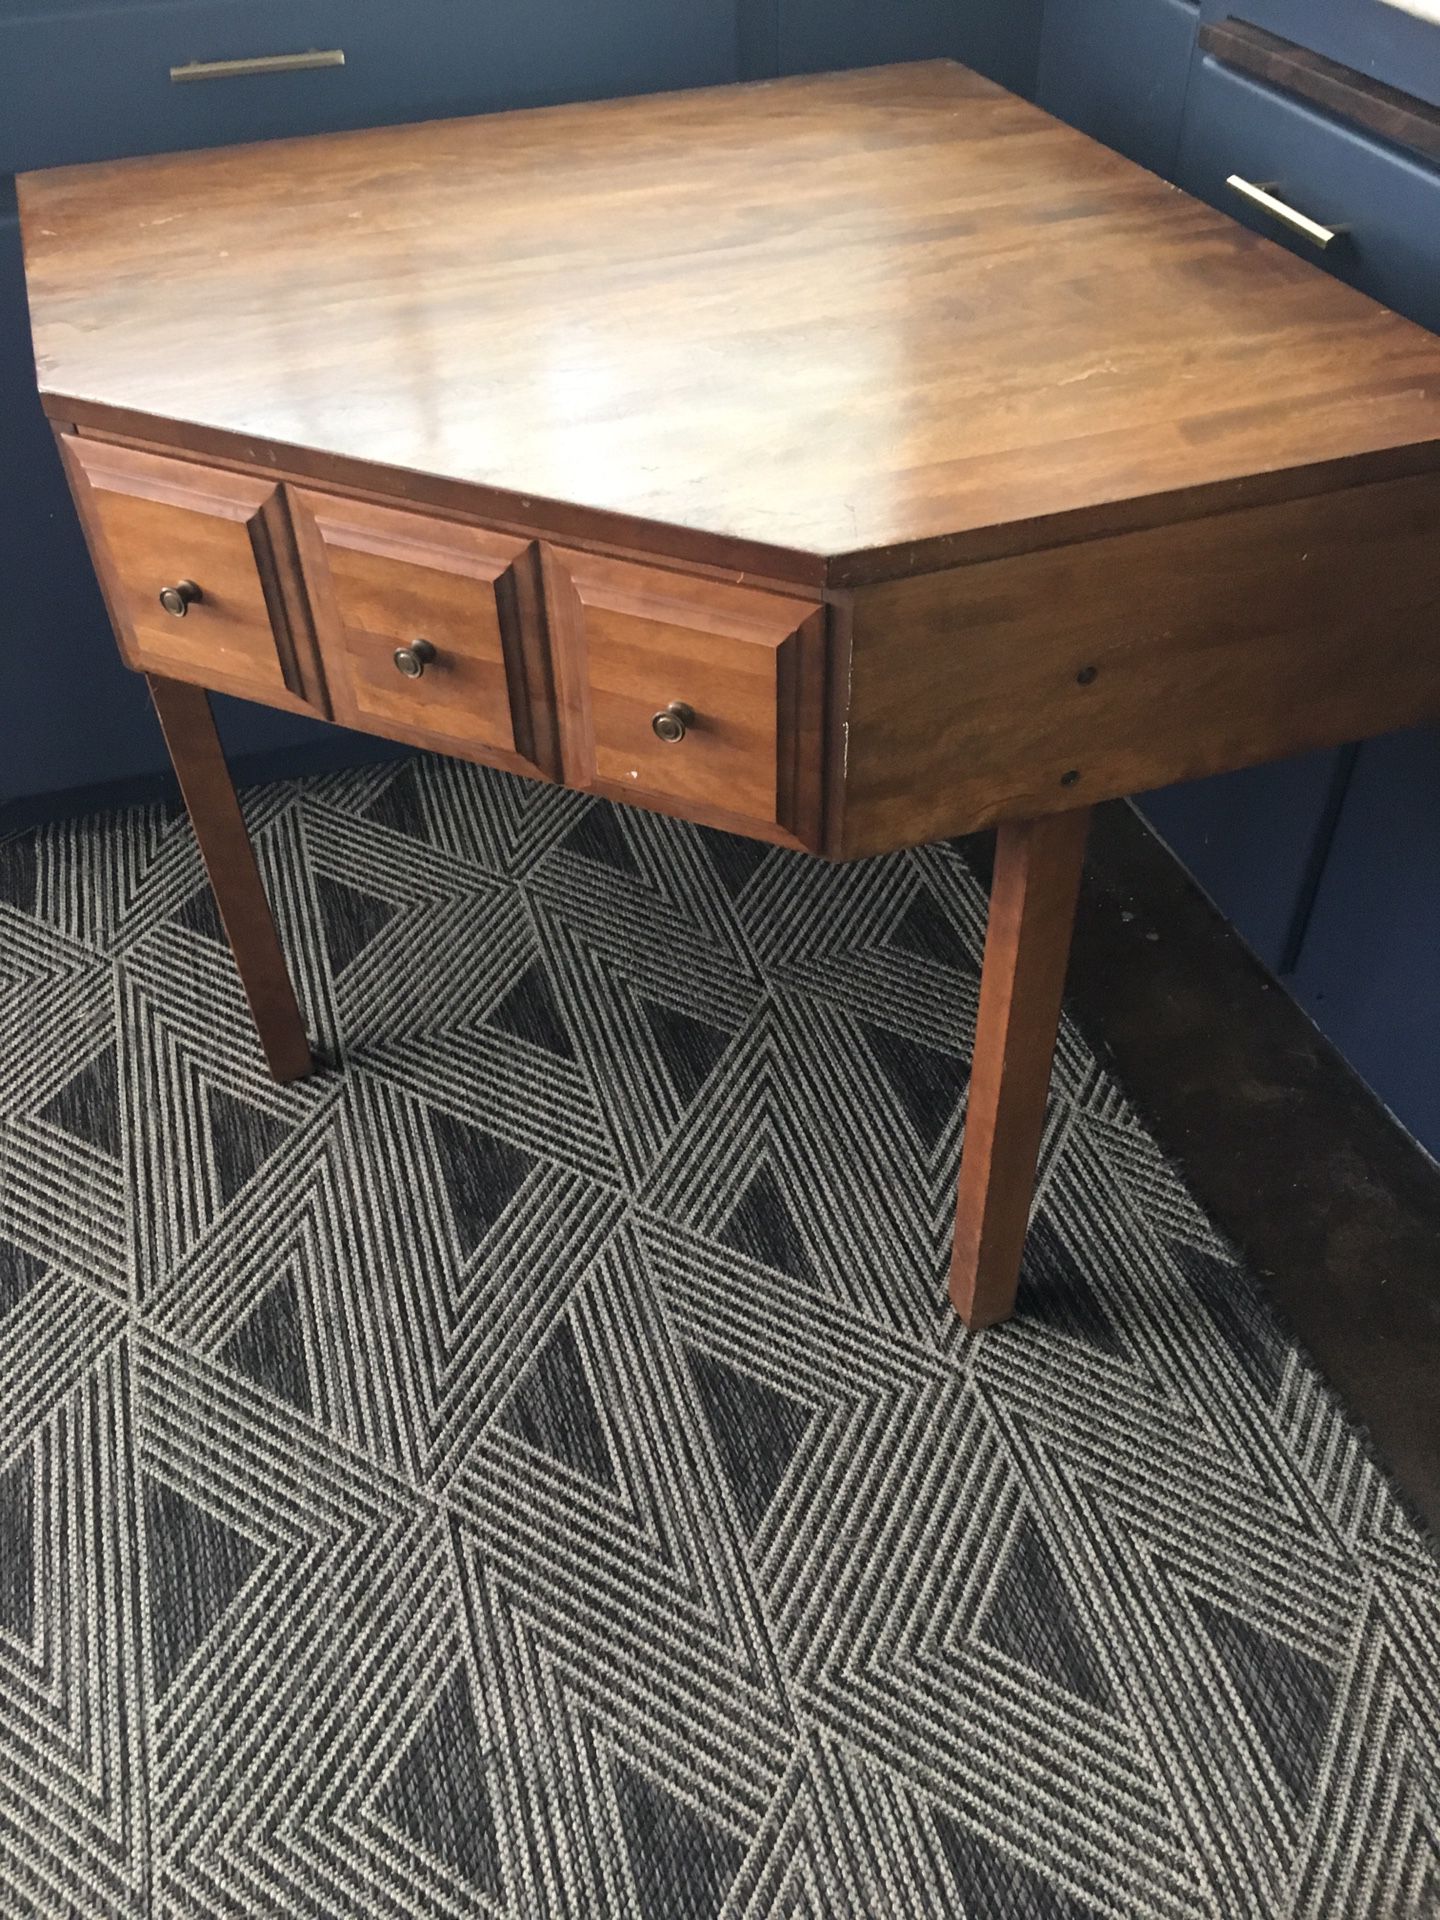 Corner table desk Craftsman style vintage